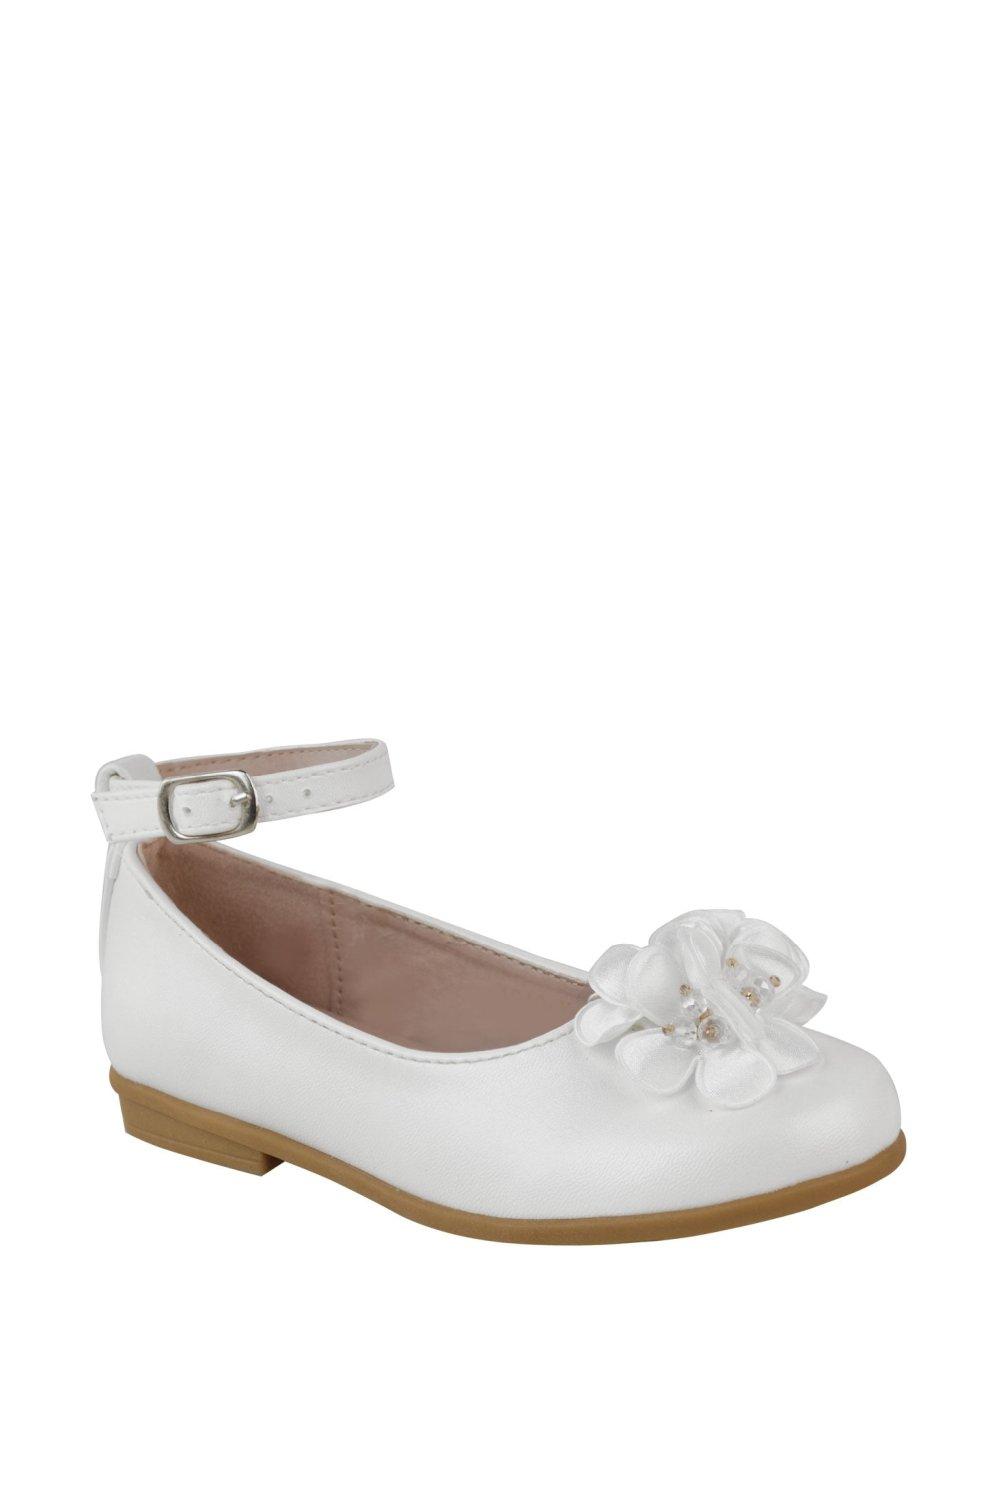 ’Lacen’ Flatform Flower Embellished Shoes With Ankle Strap